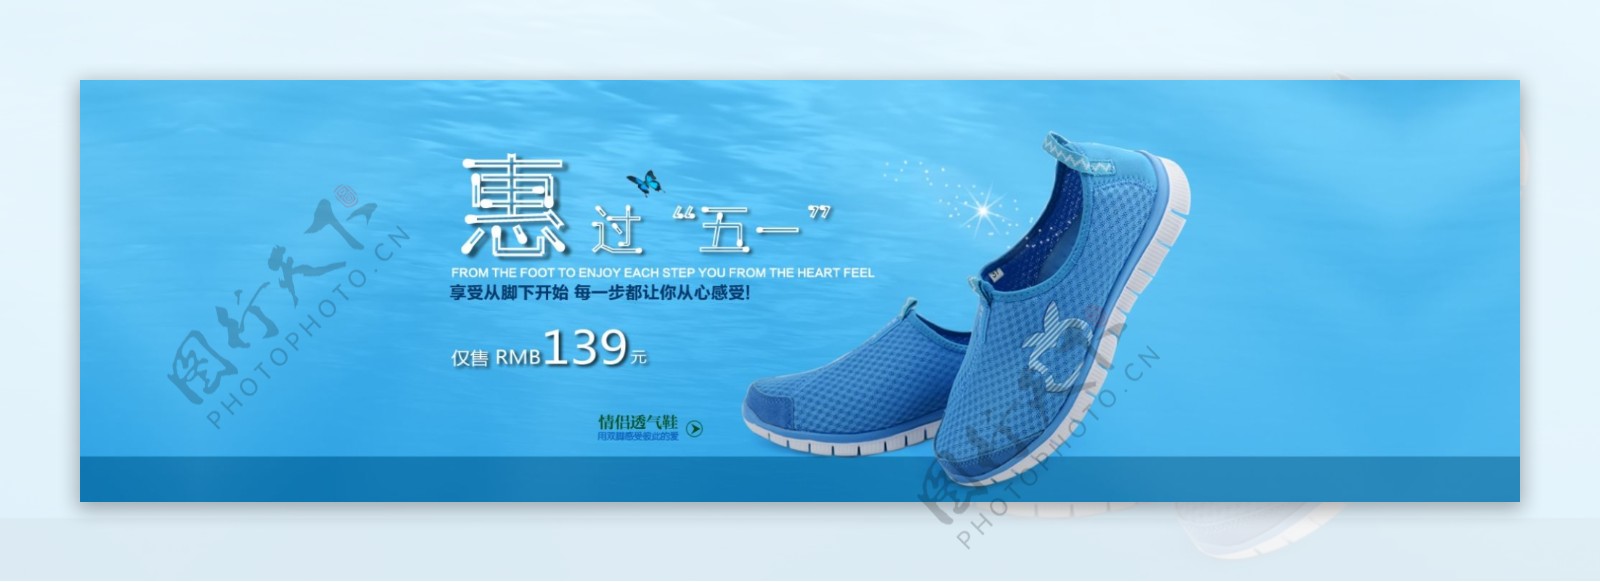 蓝色运动鞋淘宝促销广告